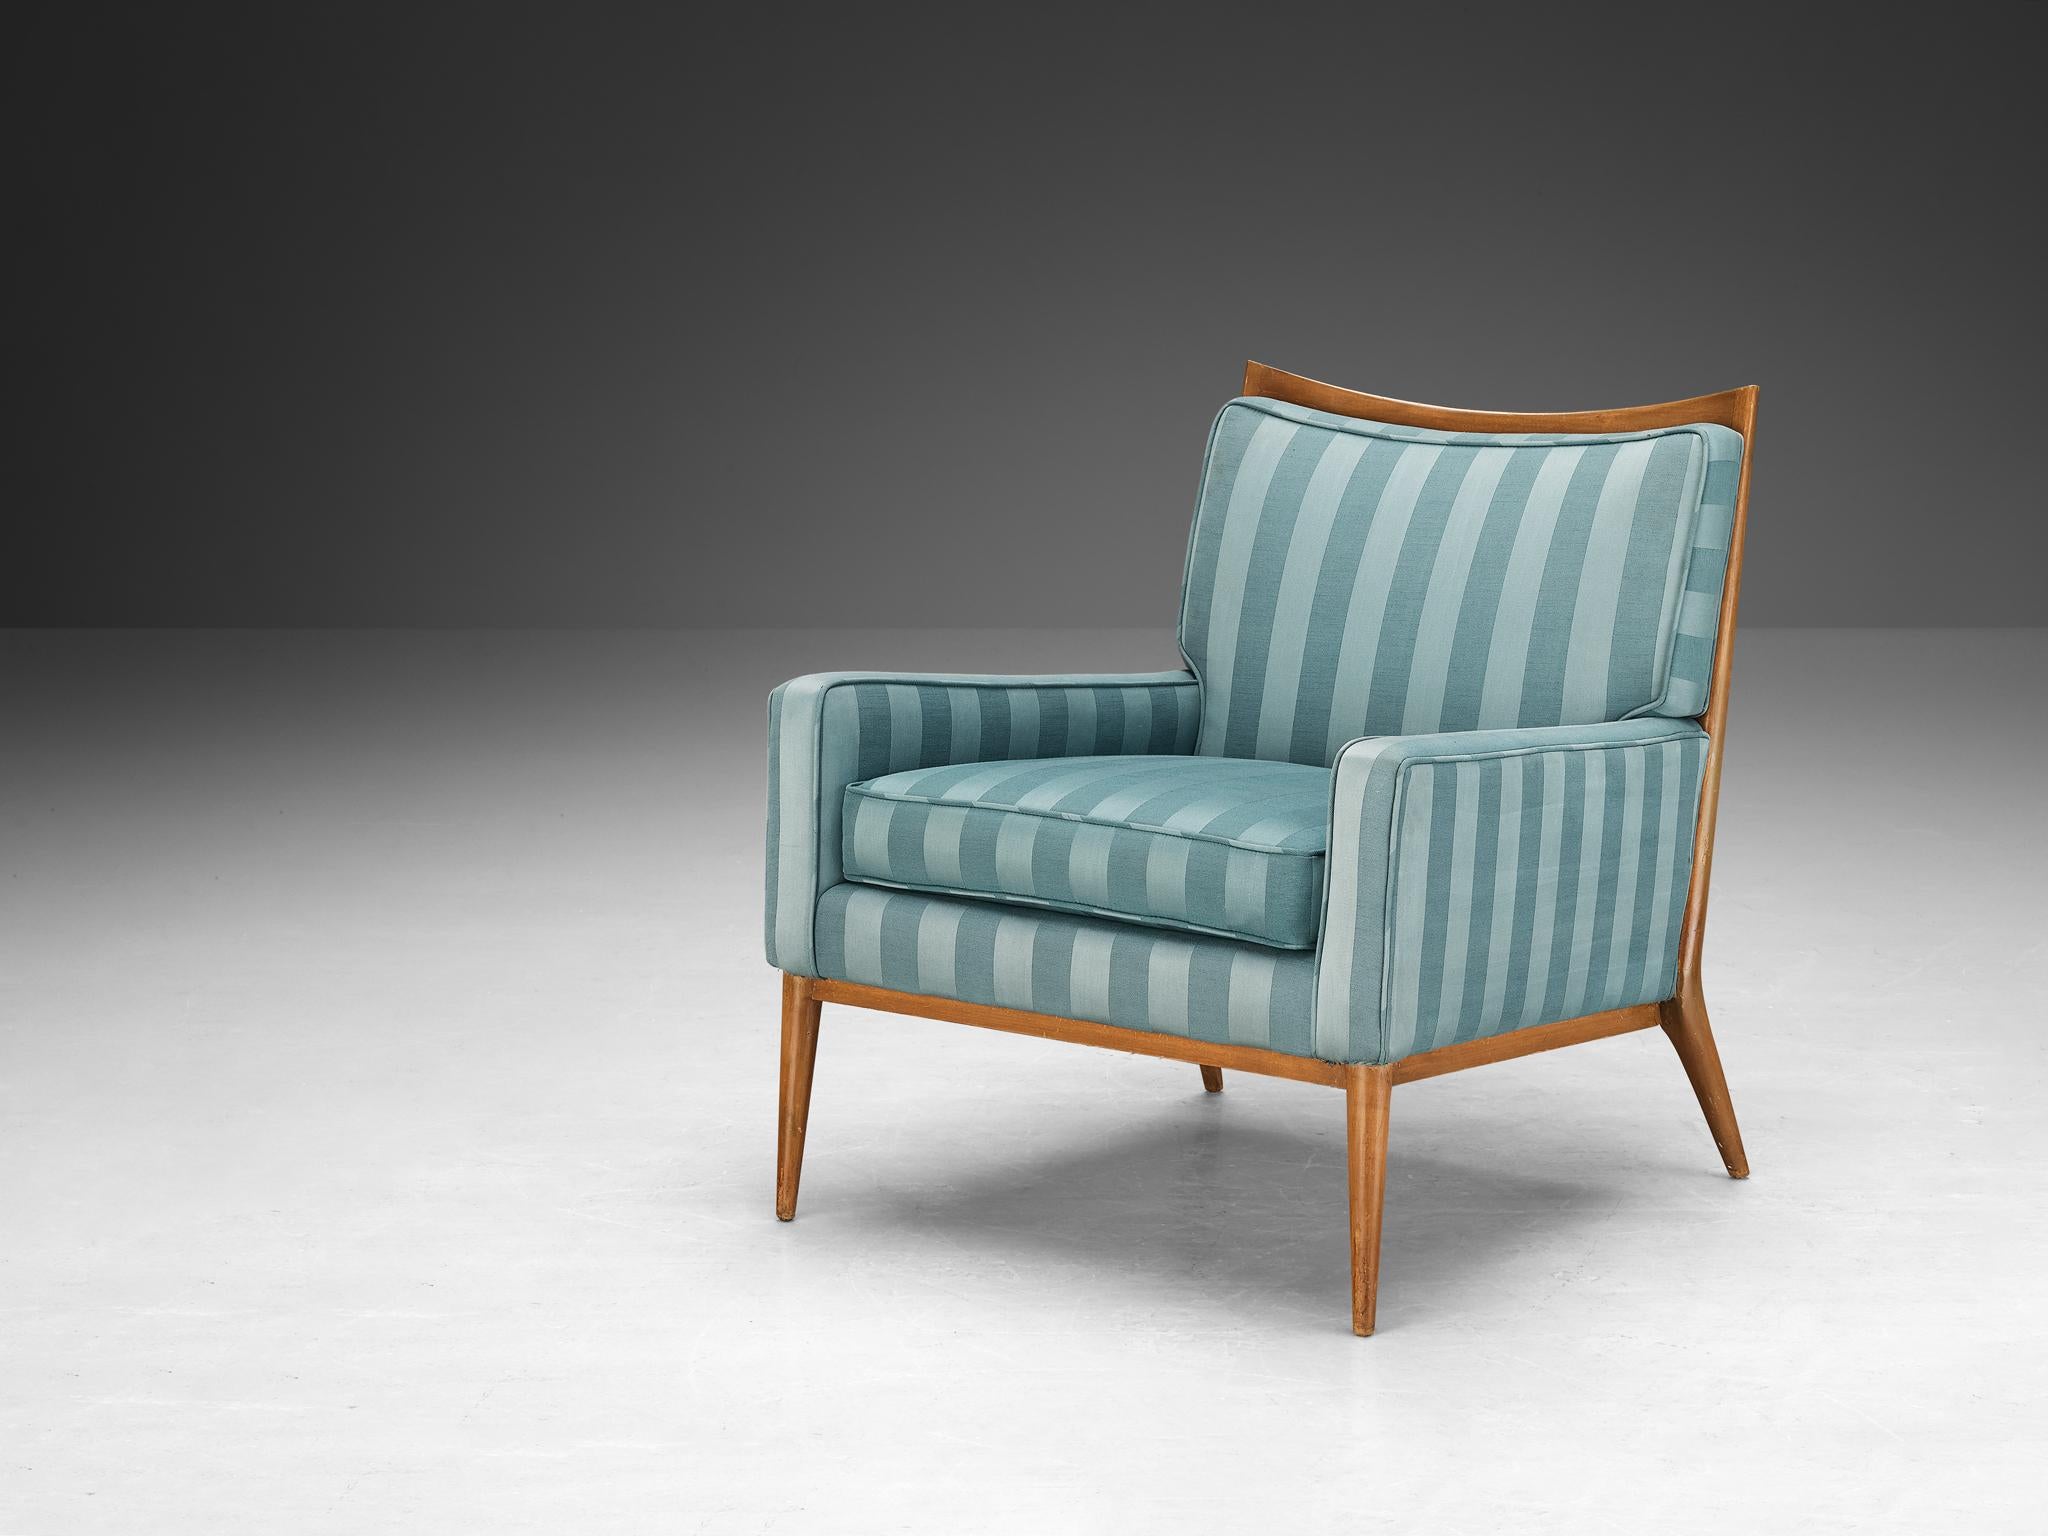 Paul McCobb pour Directional Designs, chaise longue, modèle 1322, noyer, tissu, années 1950. 

Un modèle Paul McCobb 1322 datant des années 1950. La quintessence du design des meubles de McCobb est clairement visible dans ce fauteuil, comme les